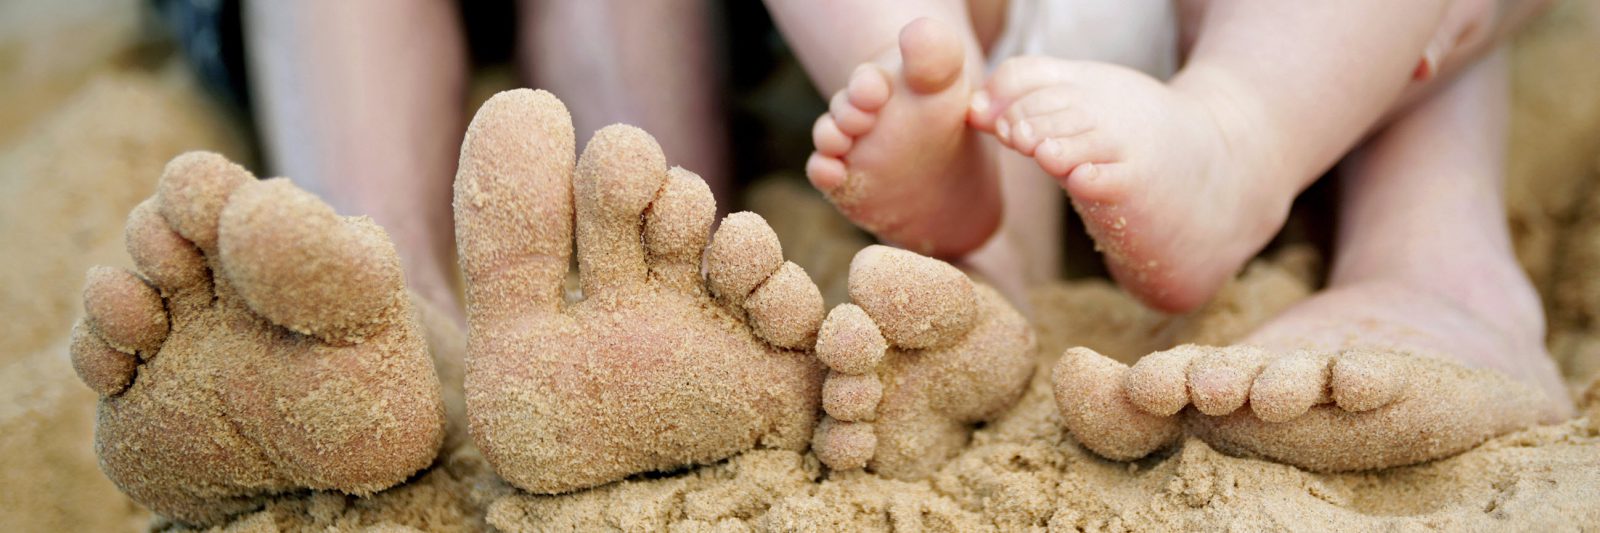 family feet on sandy beach